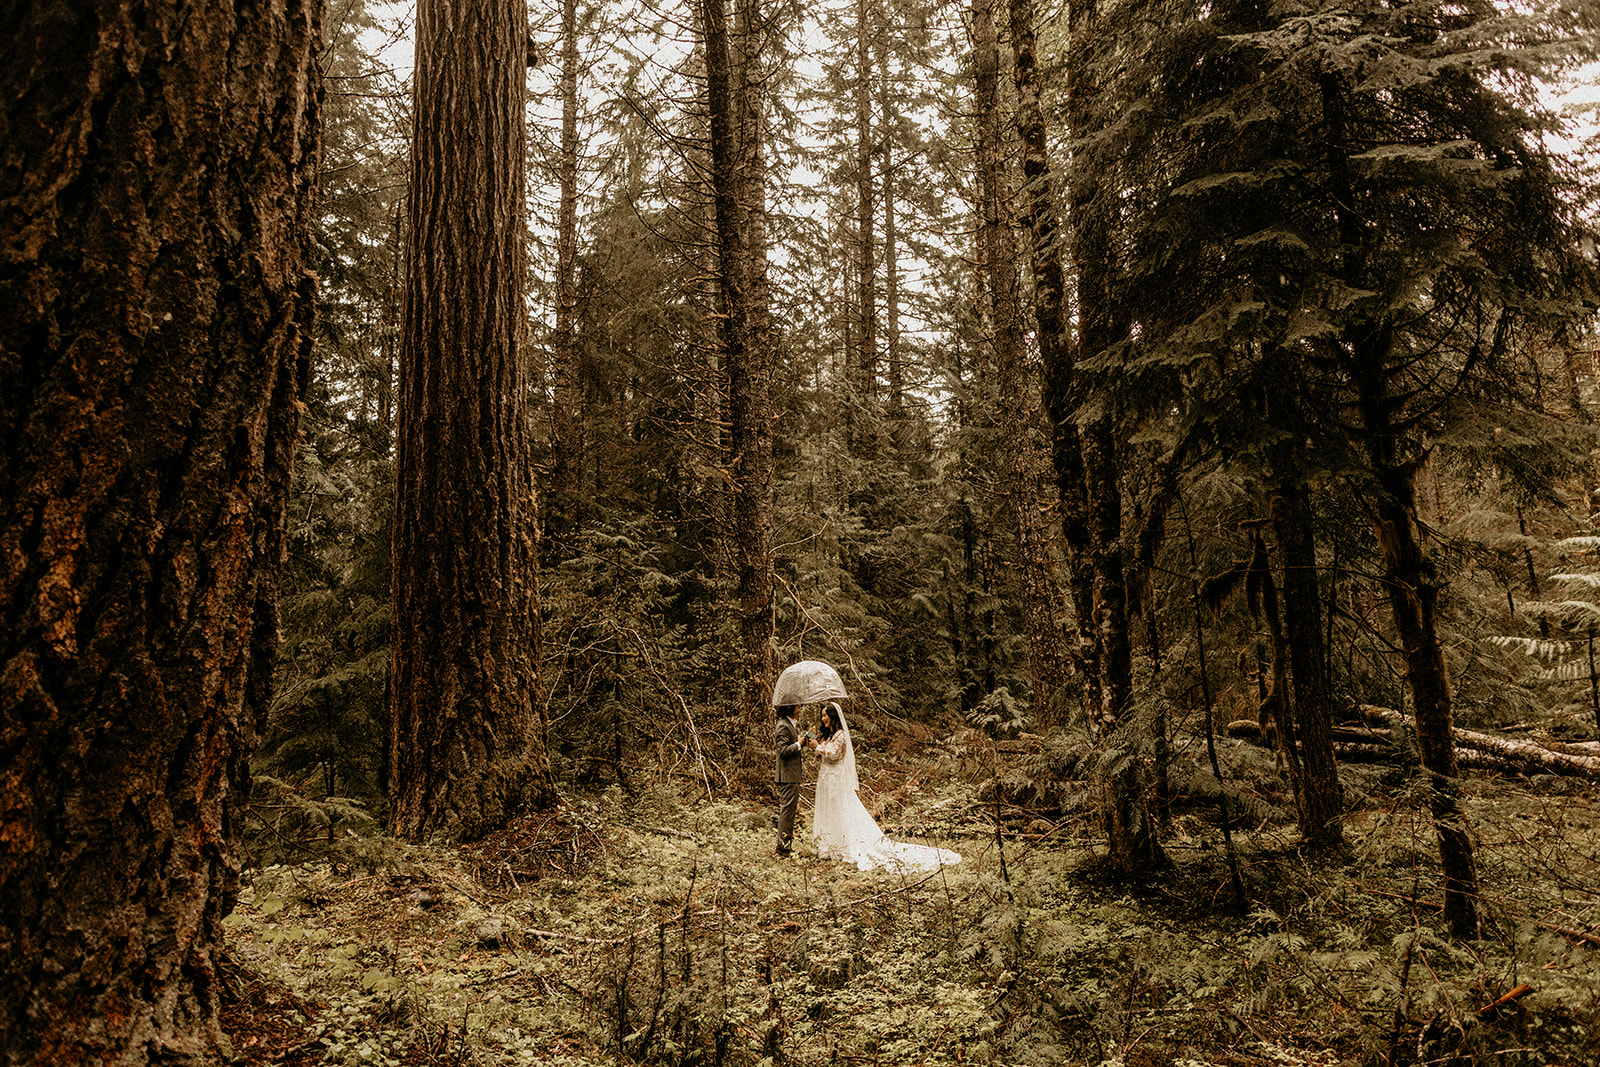 bride and groom standing under umbrella forest landscape
